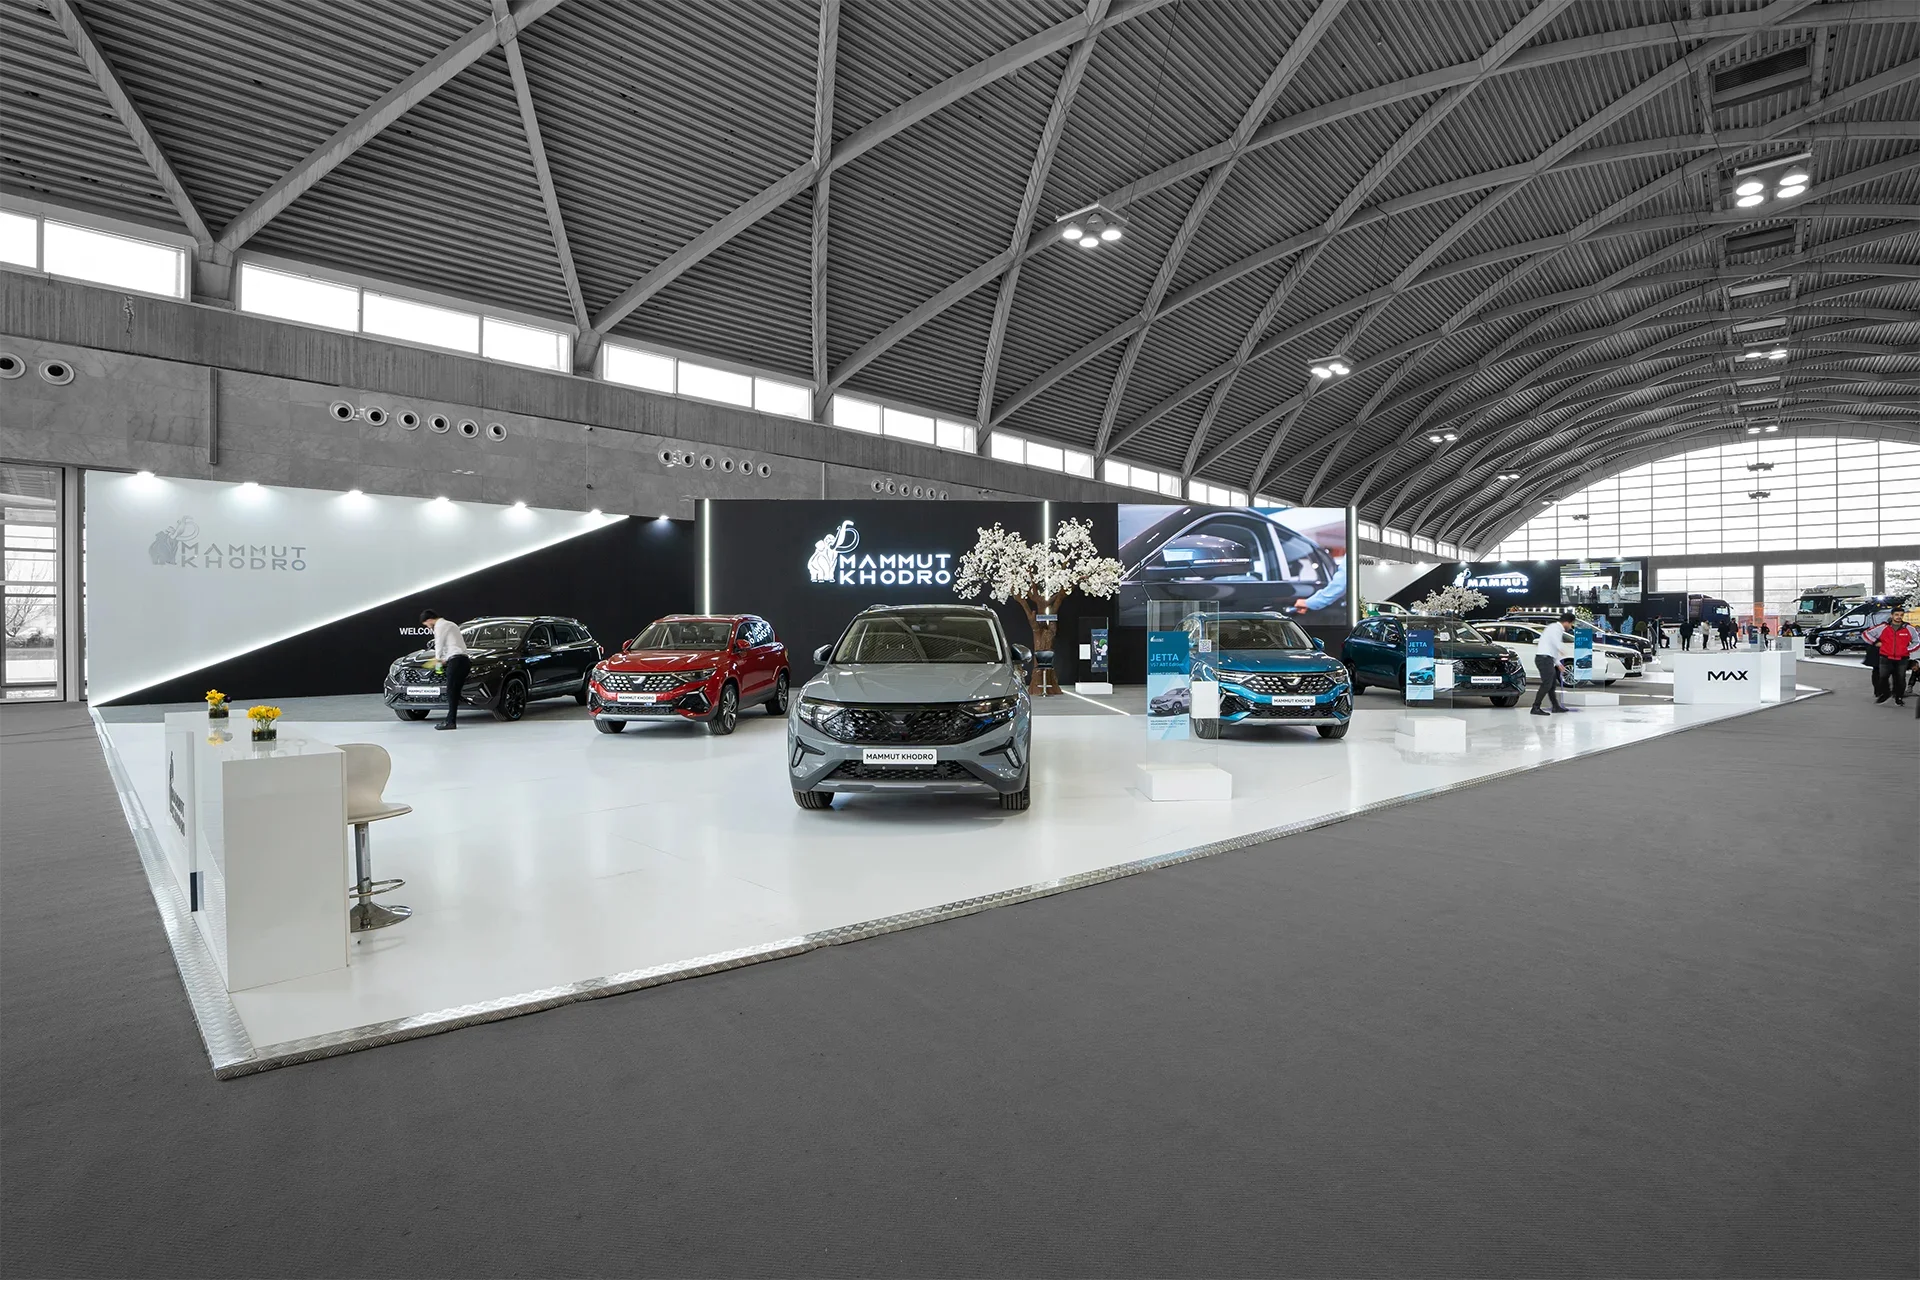   16  غرفه سازی نمایشگاهی شرکت غرفه سازی آمیتیس نمایشگاه خودرو شهر آفتاب 1402 